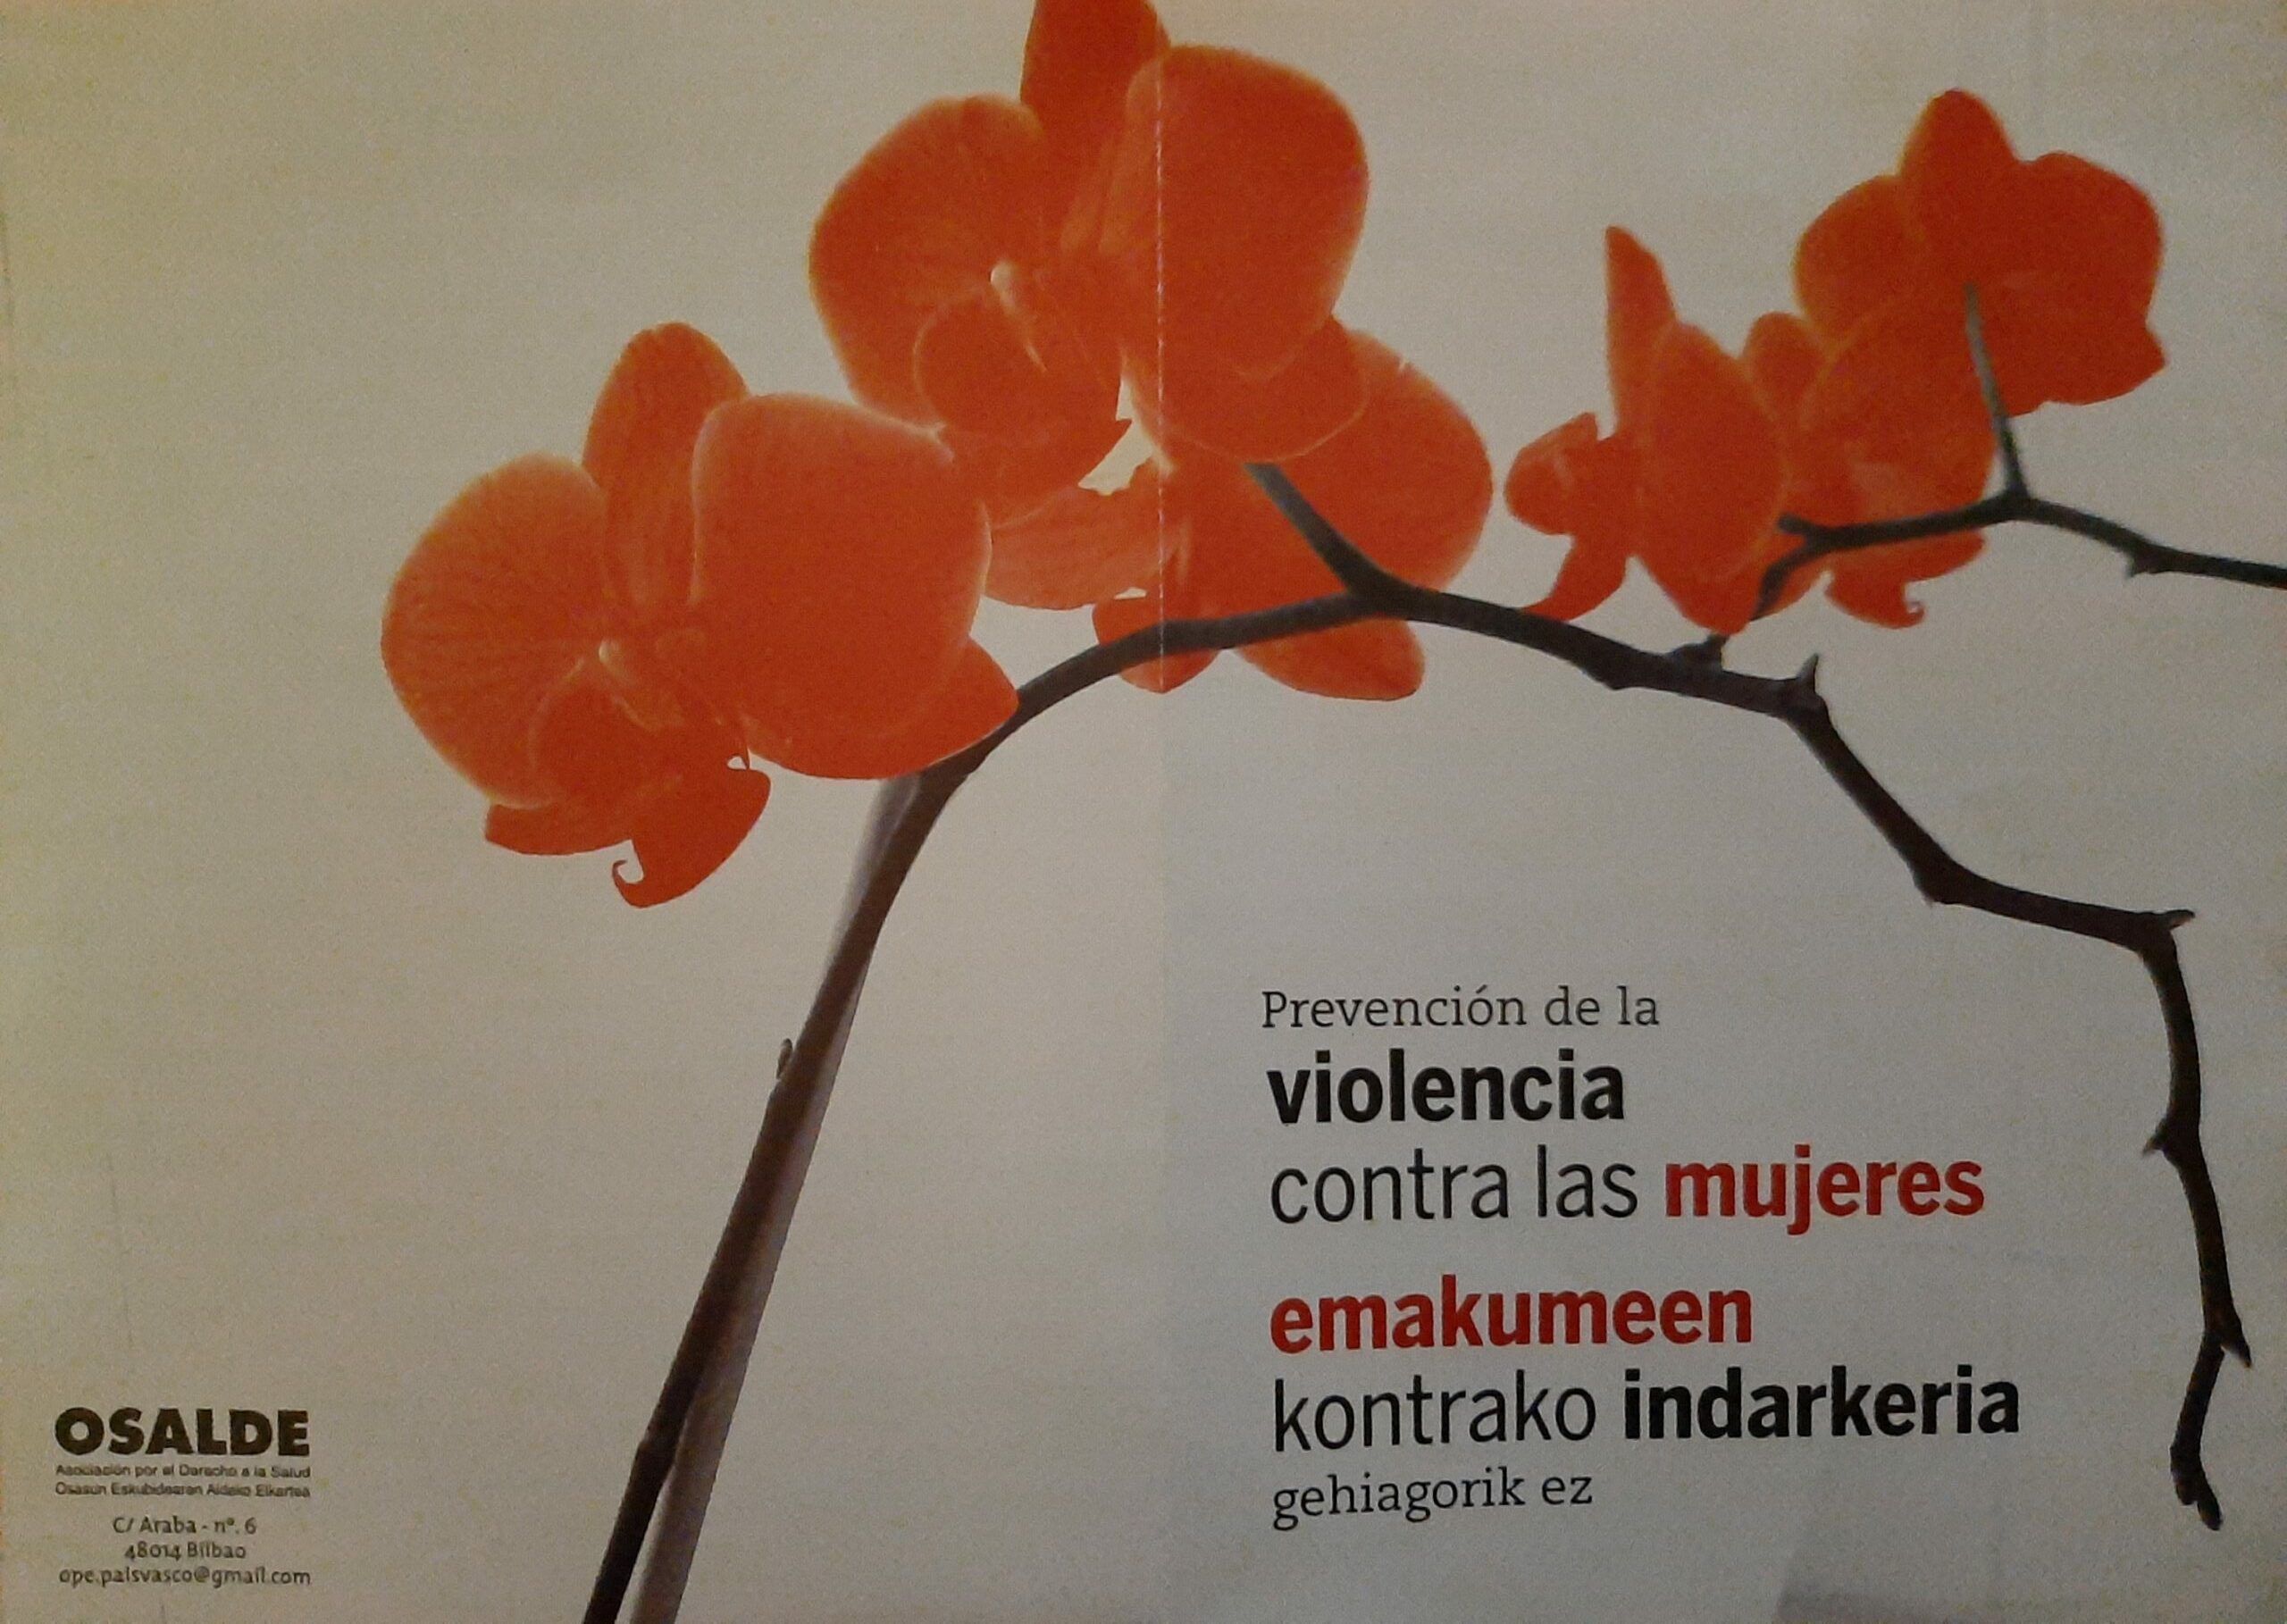 25N Día Internacional de la Eliminación de la Violencia contra la Mujer